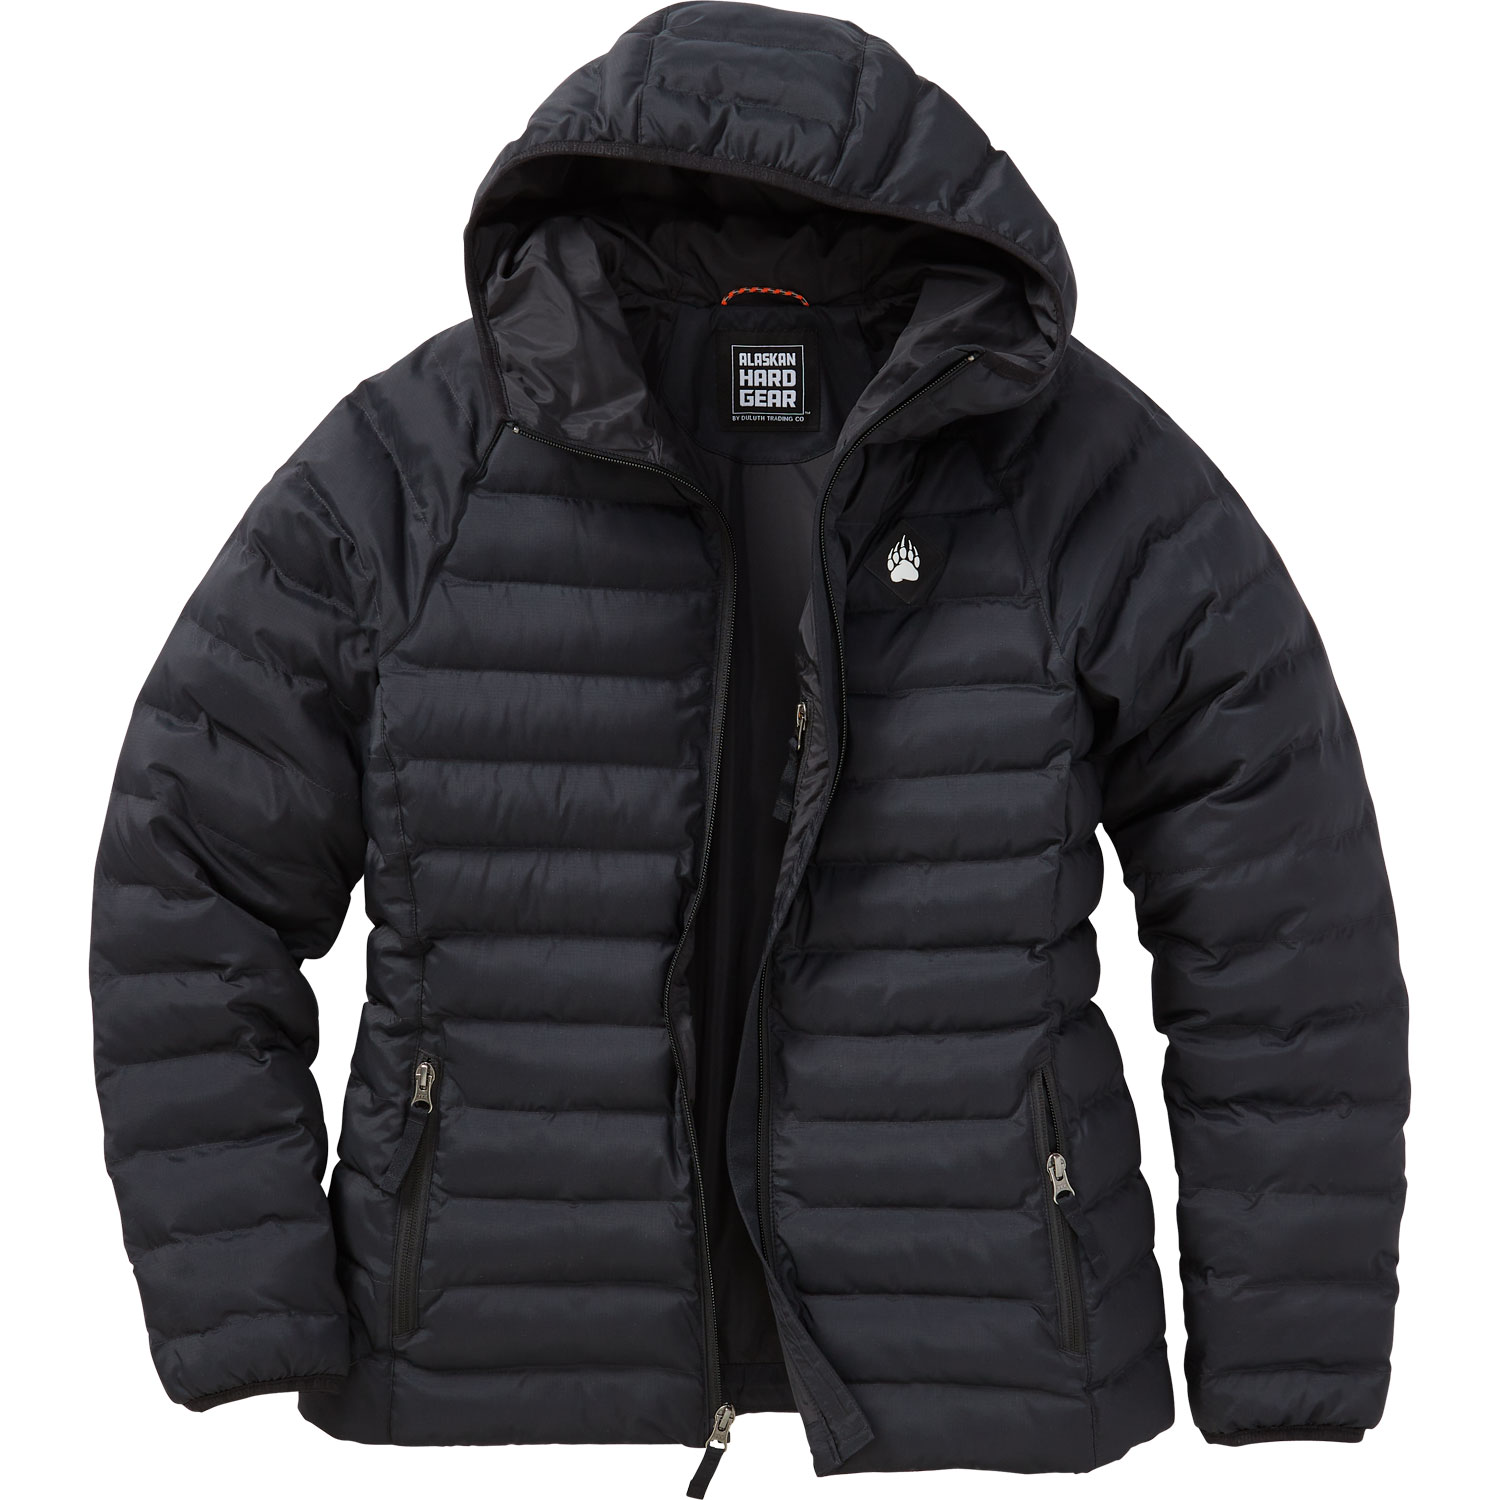 ALASKAN HARDGEAR BY Duluth Trading Co Bear Hide Men Grey Black Utility  Jacket $45.00 - PicClick